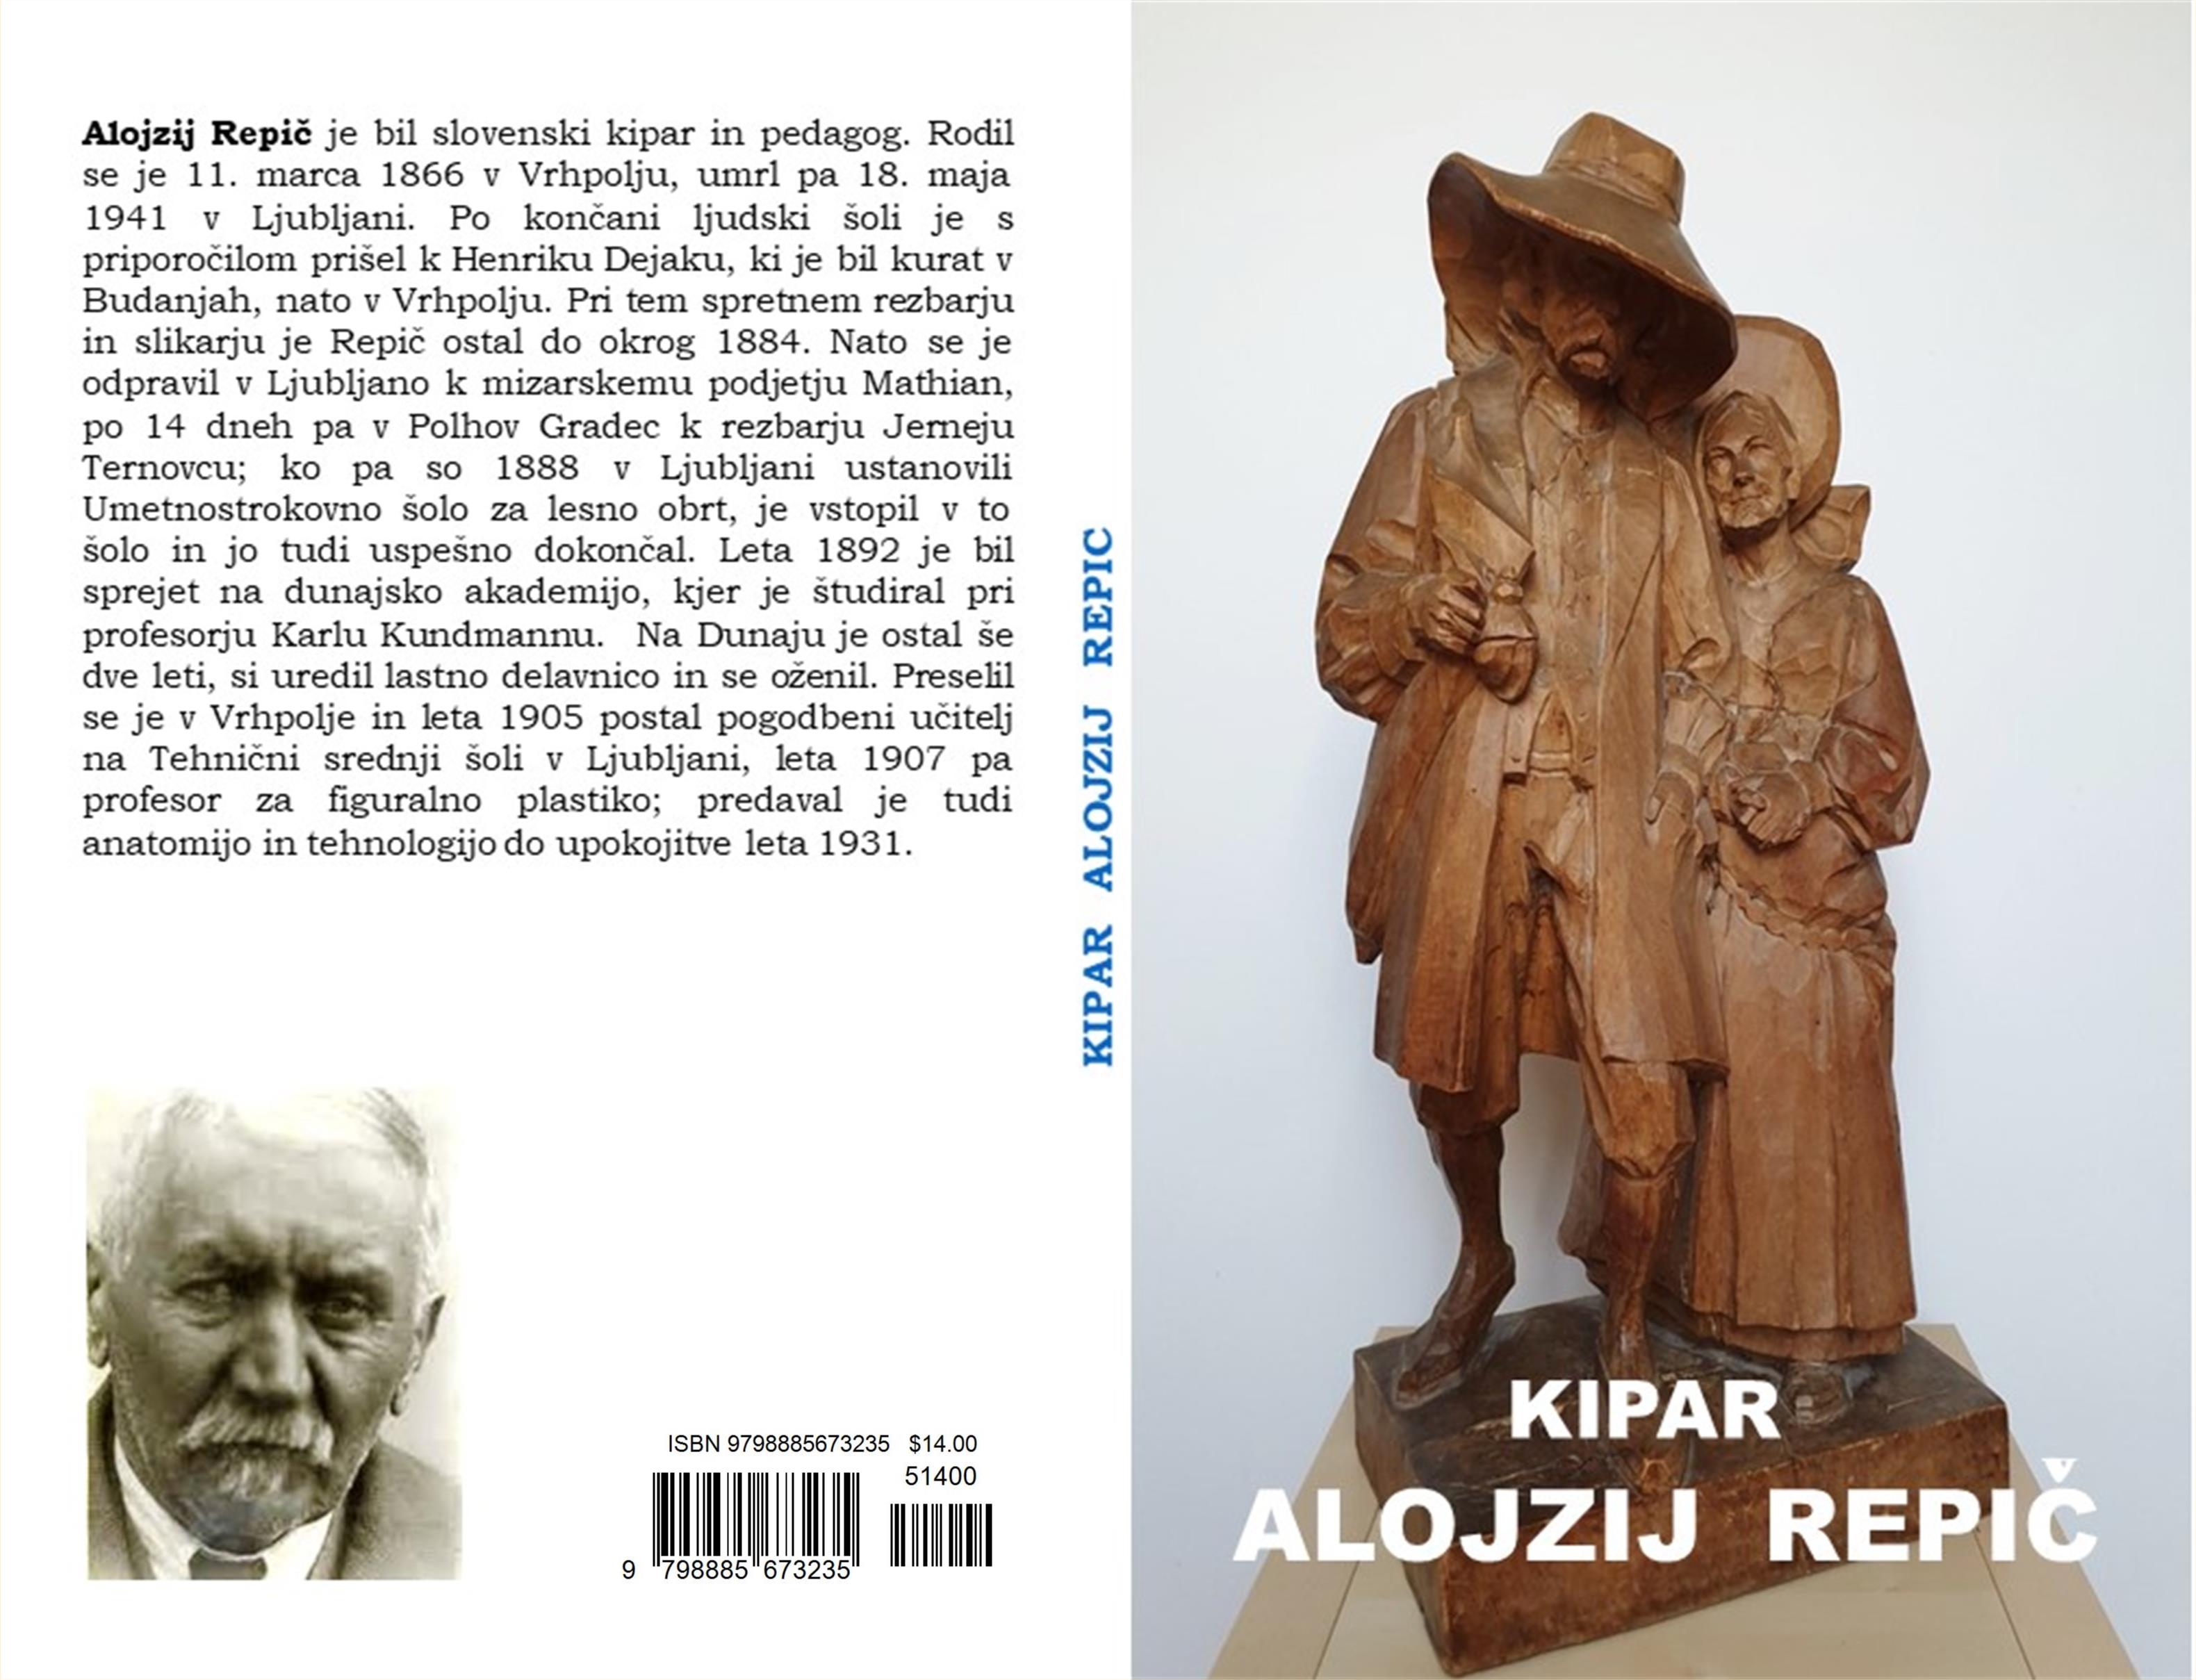 Kipar Alojzij Repic cover image